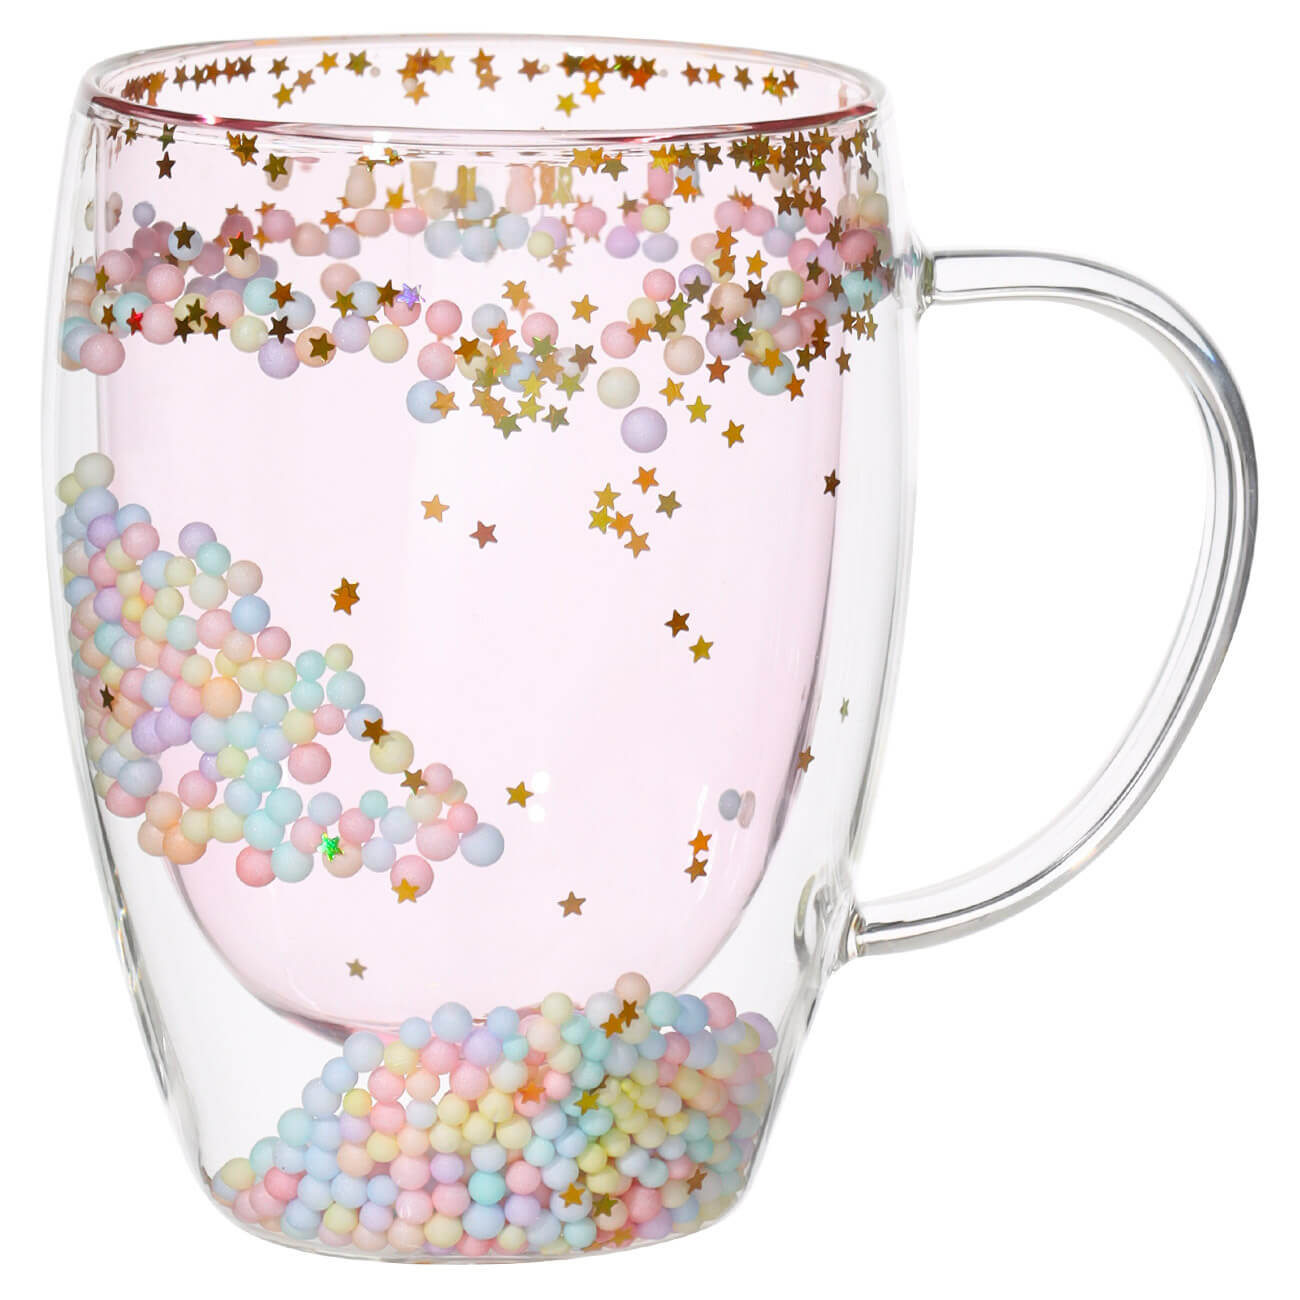 Кружка, 330 мл, с шариками, стекло Б, розовая, Звезды, Air sparkly изображение № 1